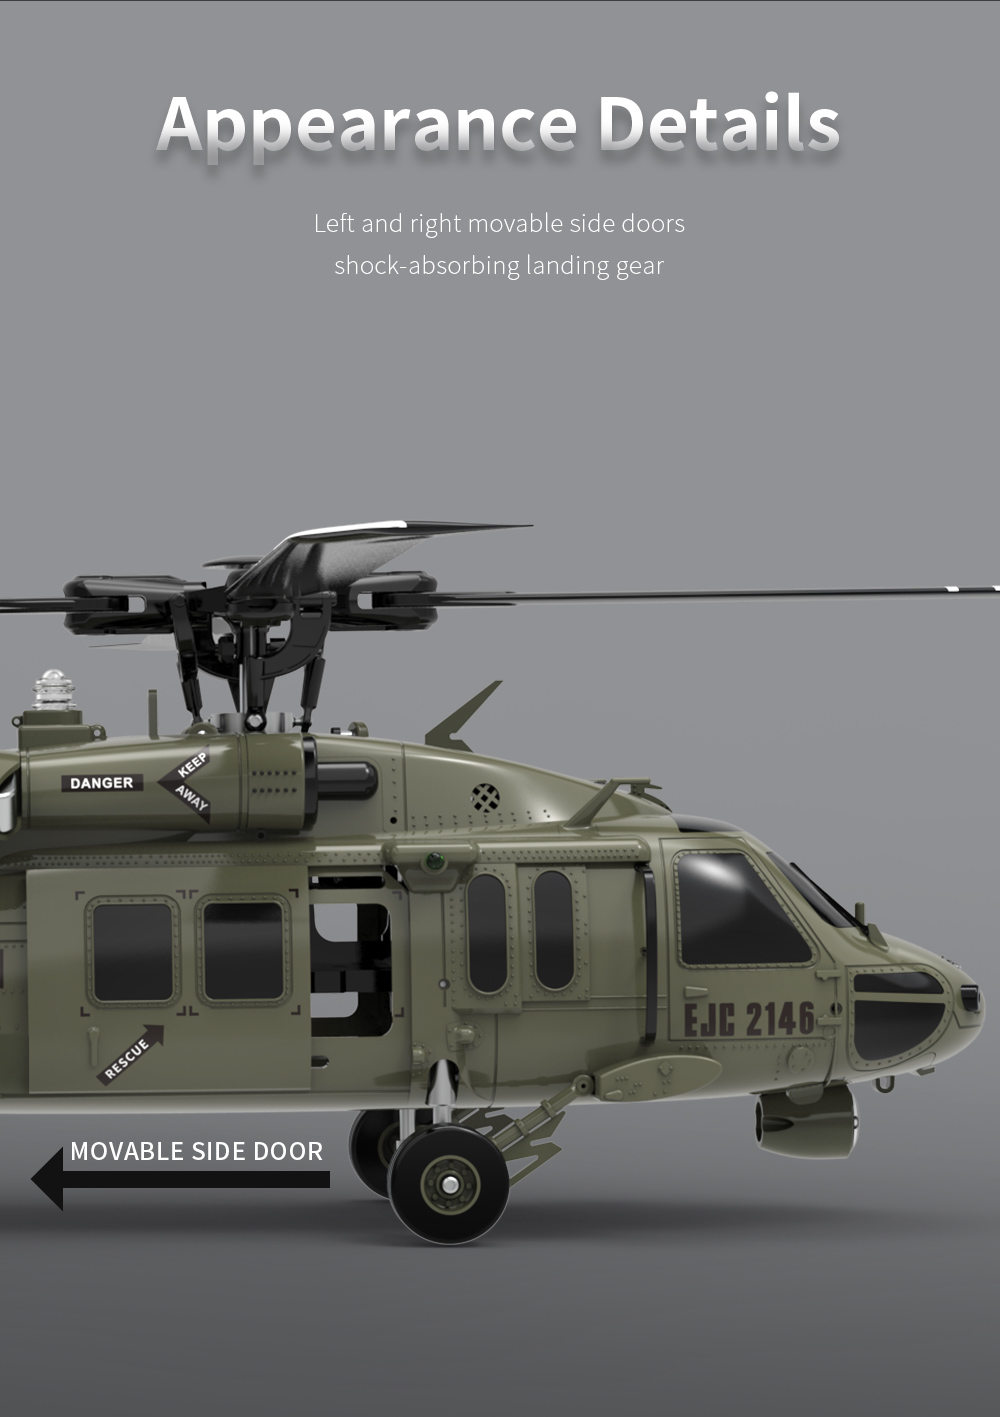 UH-60 Black Hawk RC Military Helicopter (CH-53E Super Stallion, AH-64 Apache LongbowAH-64 Apache Longbow, AH-1W Super CobraAH-1W Super Cobra)